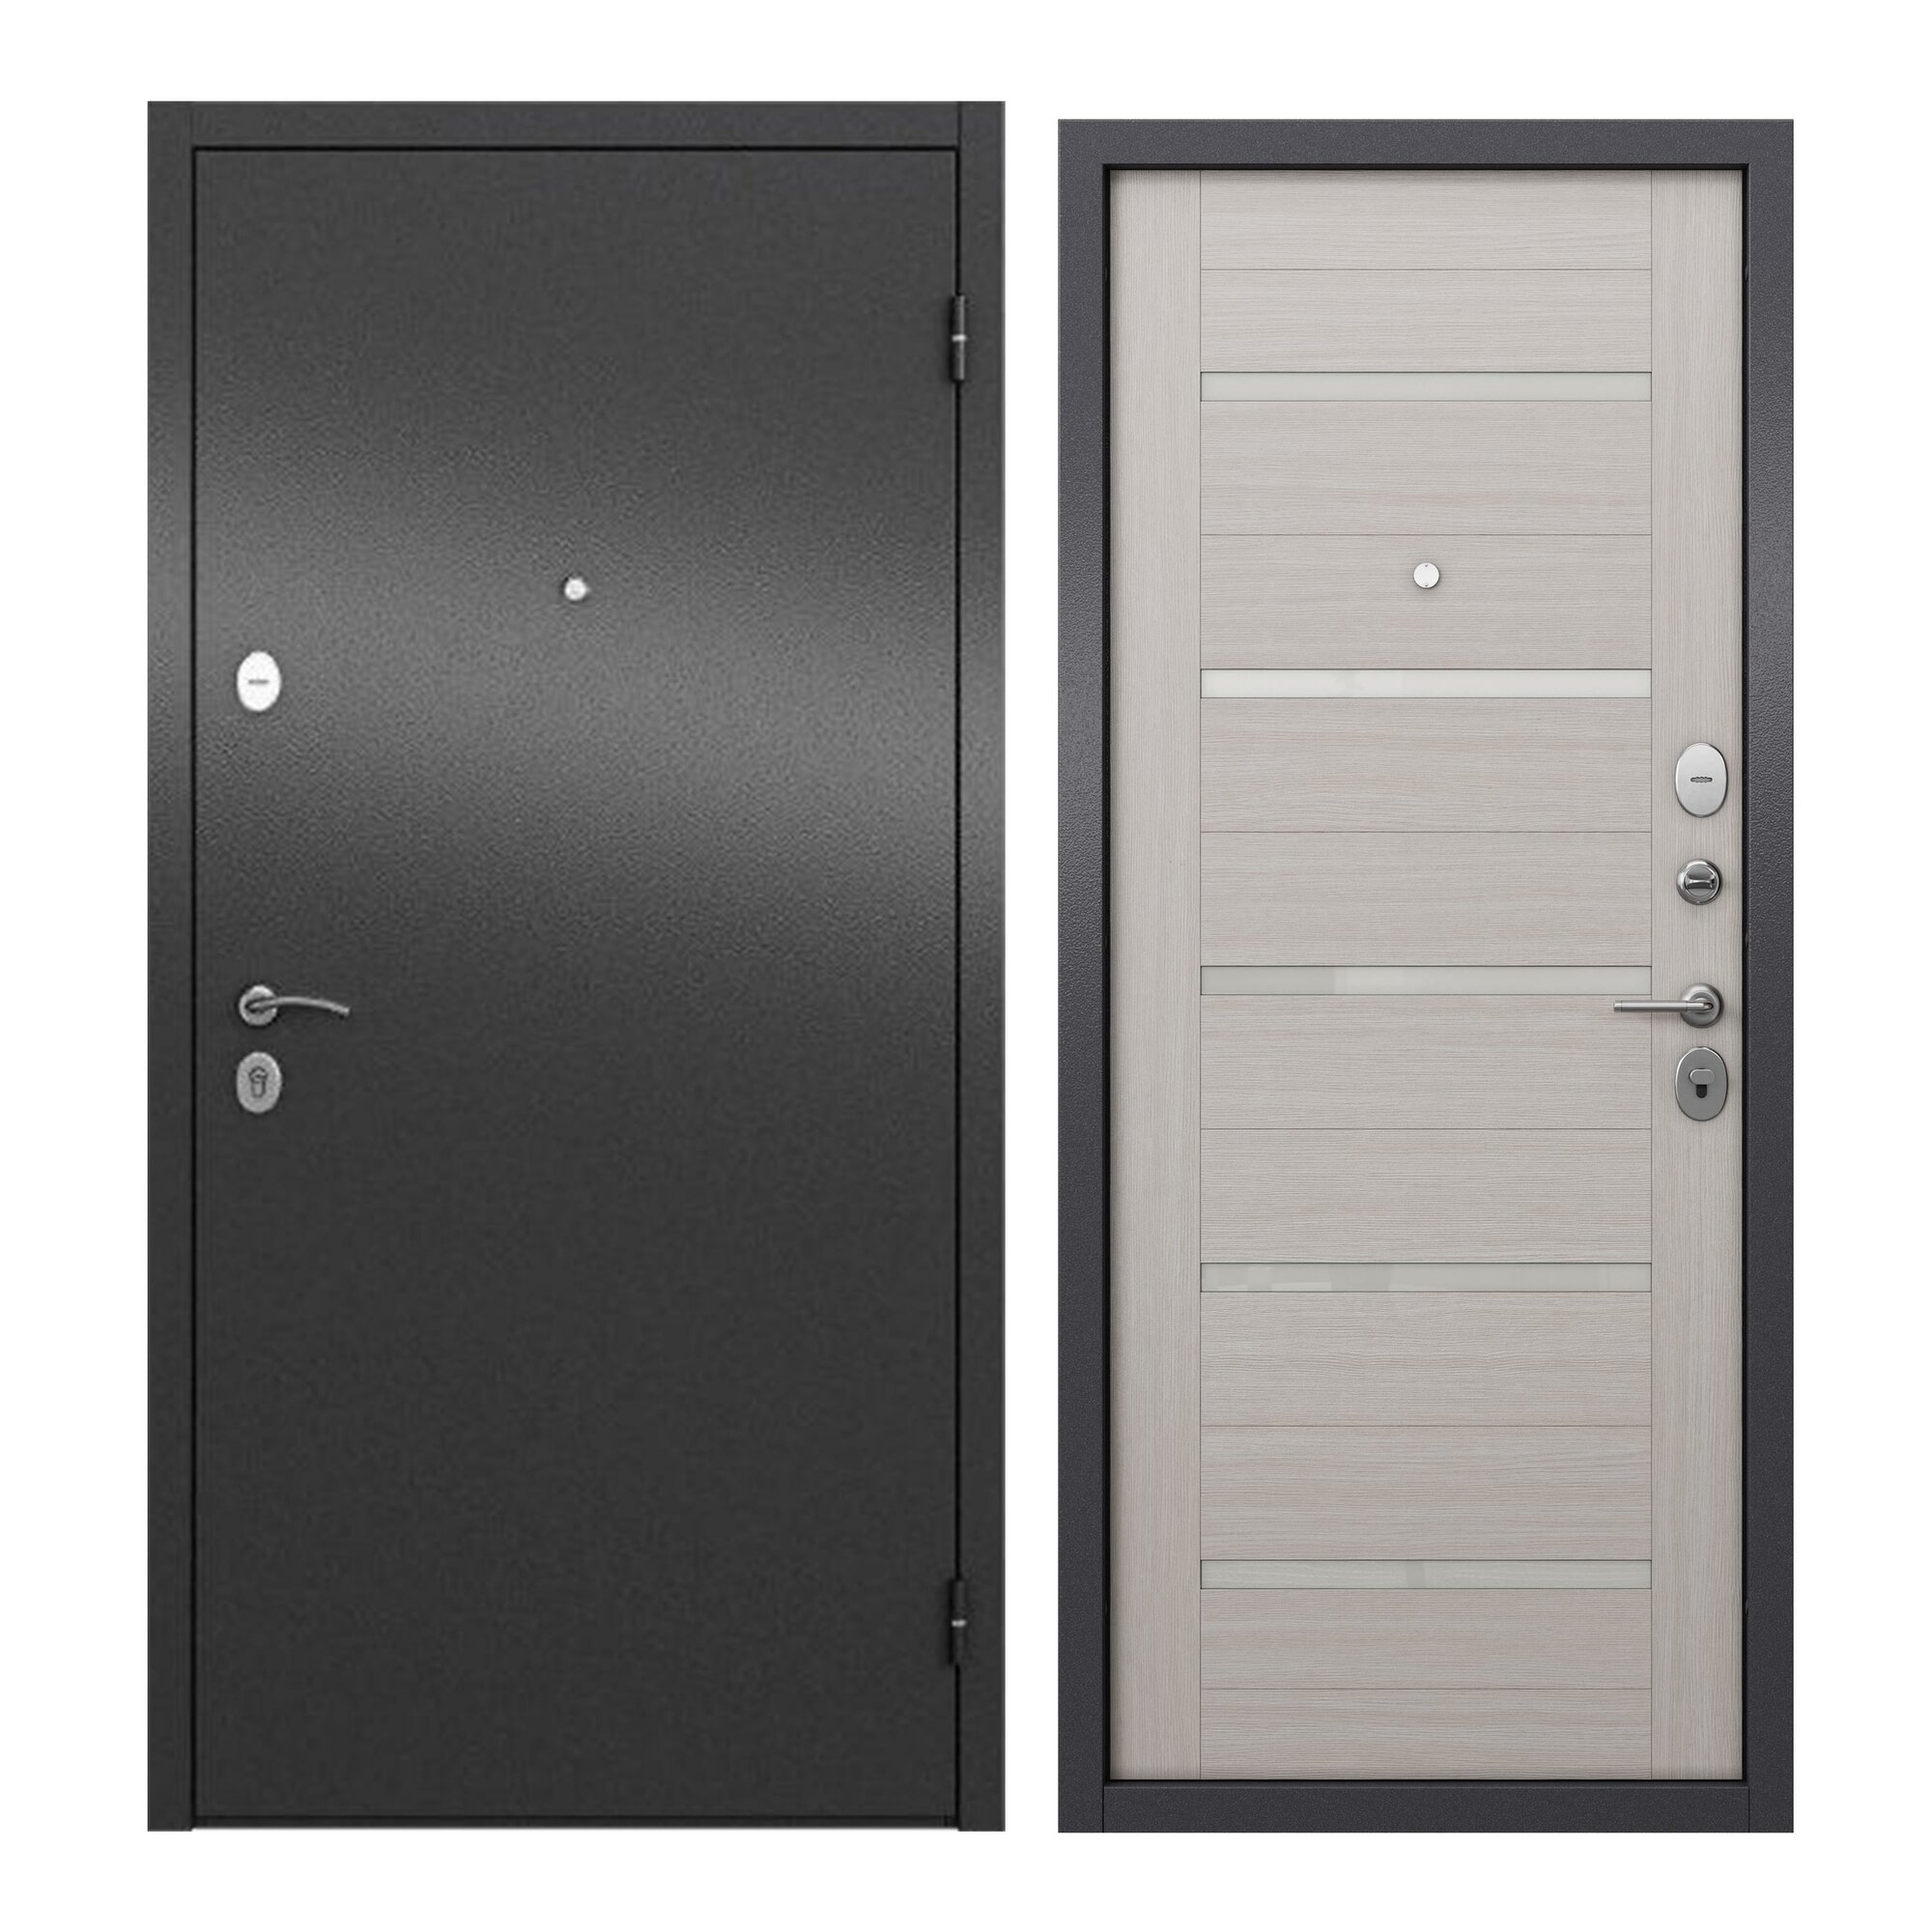 Дверь входная для квартиры ProLine металлическая Apartment X 860х2050 правая антивандальное покрытие два уплотнителя замки 4го и 2го класса серый